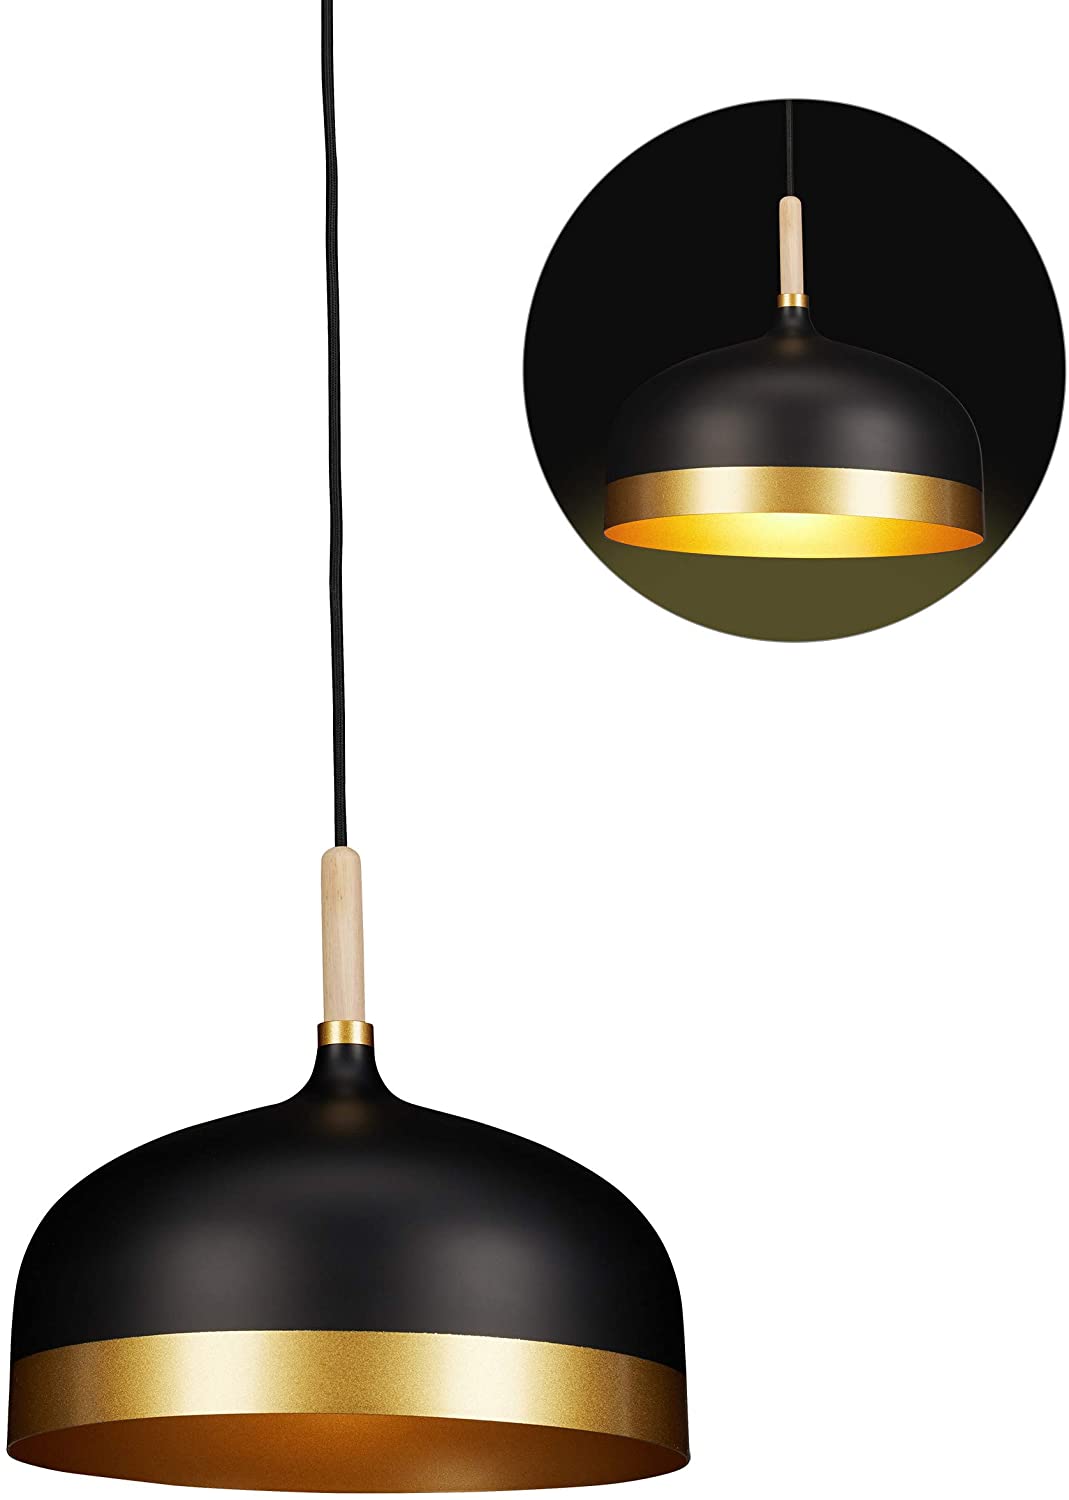 Relaxdays Pendant Light Black Vintage Design Single Bulb For Living Room Me